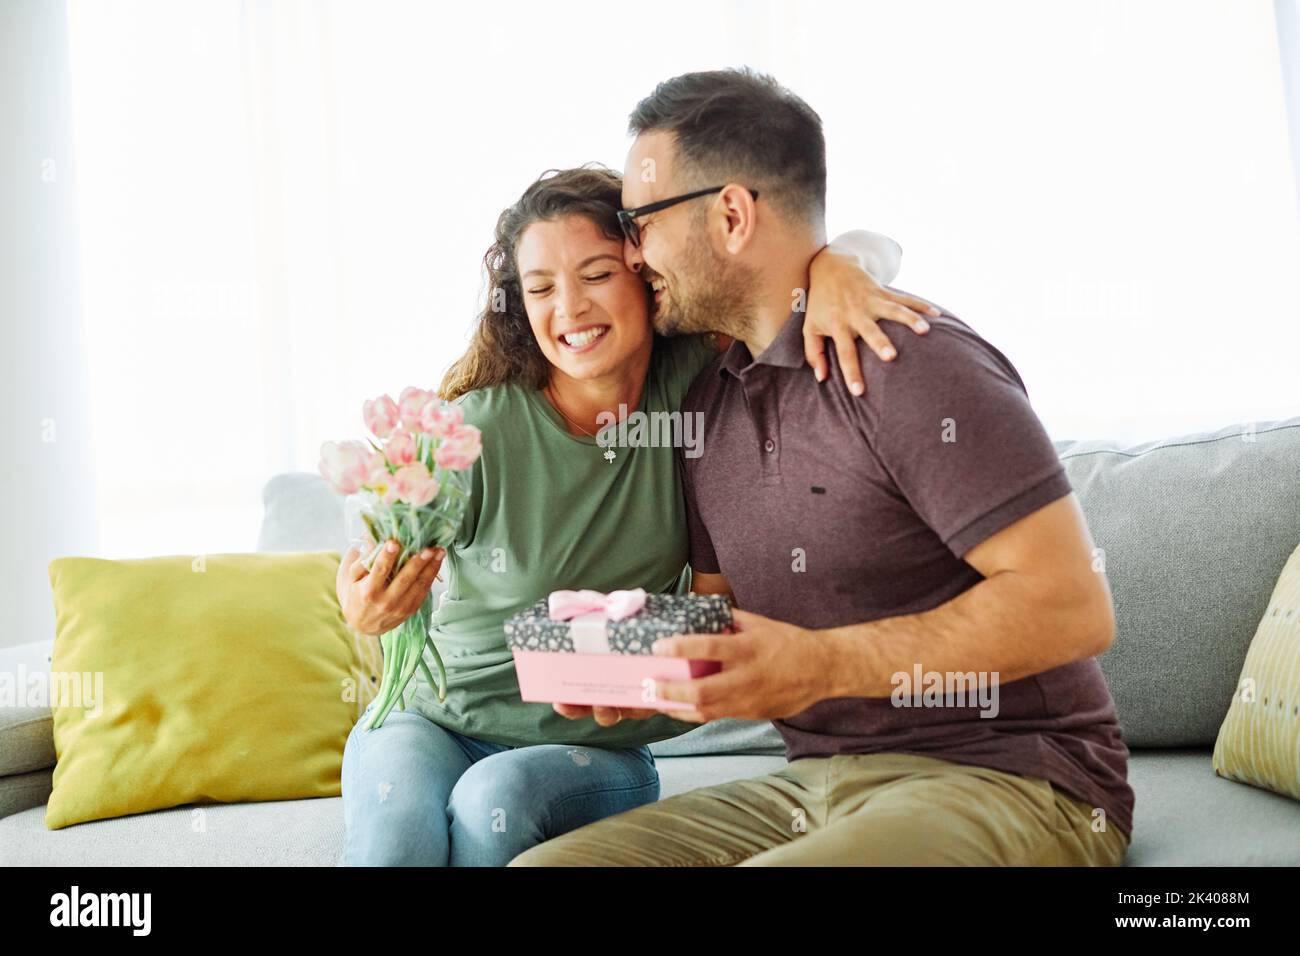 Geschenk Frau Mann Paar glücklich Liebe Glück präsentieren romantisch lächelnd zusammen Box Freundin Stockfoto